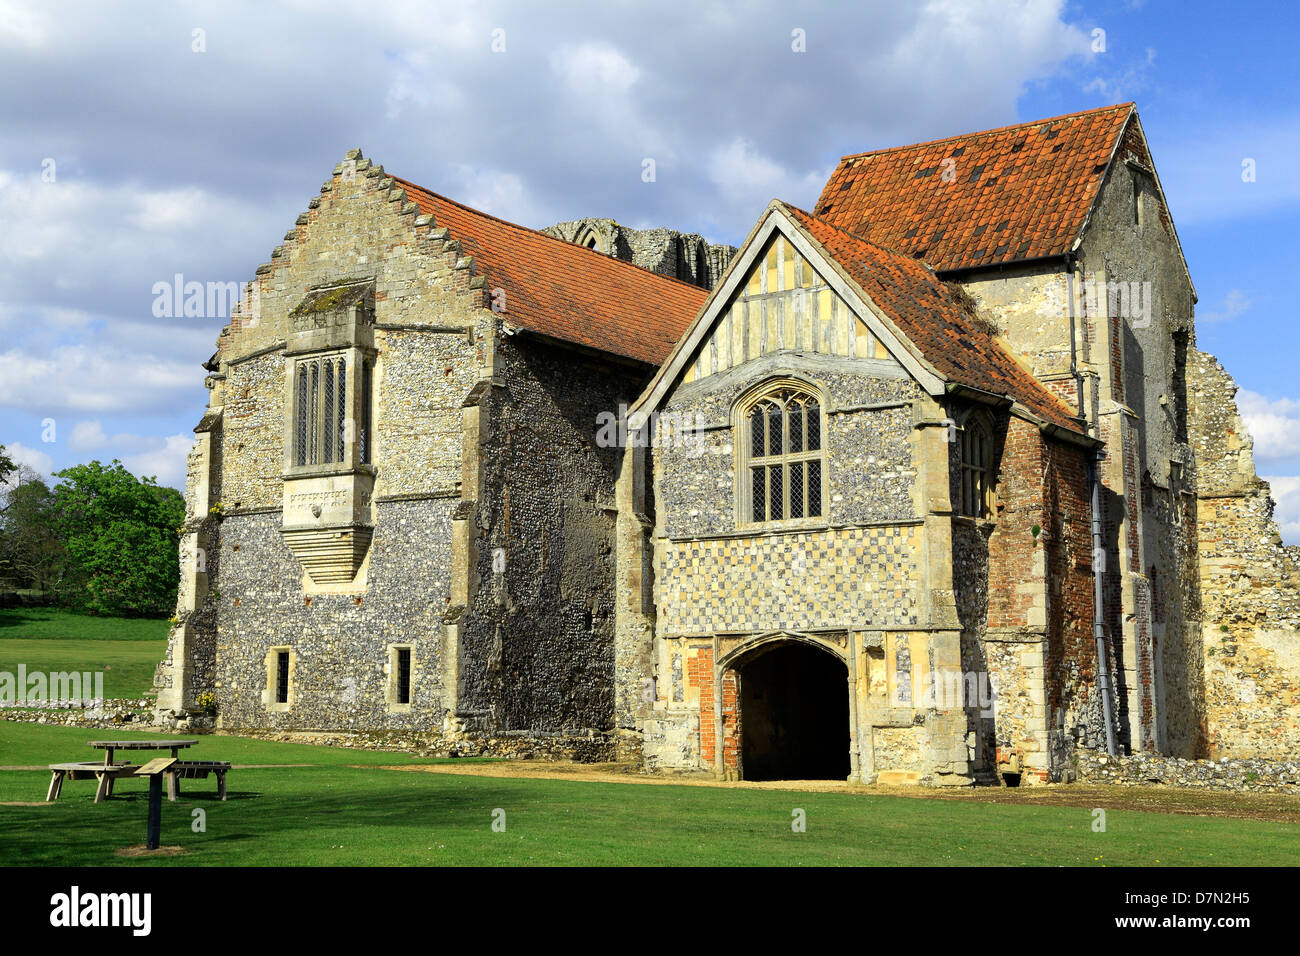 Castle Acre Prieuré, Norfolk, du logement avant, en Angleterre, Royaume-Uni, le monastère médiéval de Cluny, prieurés Anglais Banque D'Images